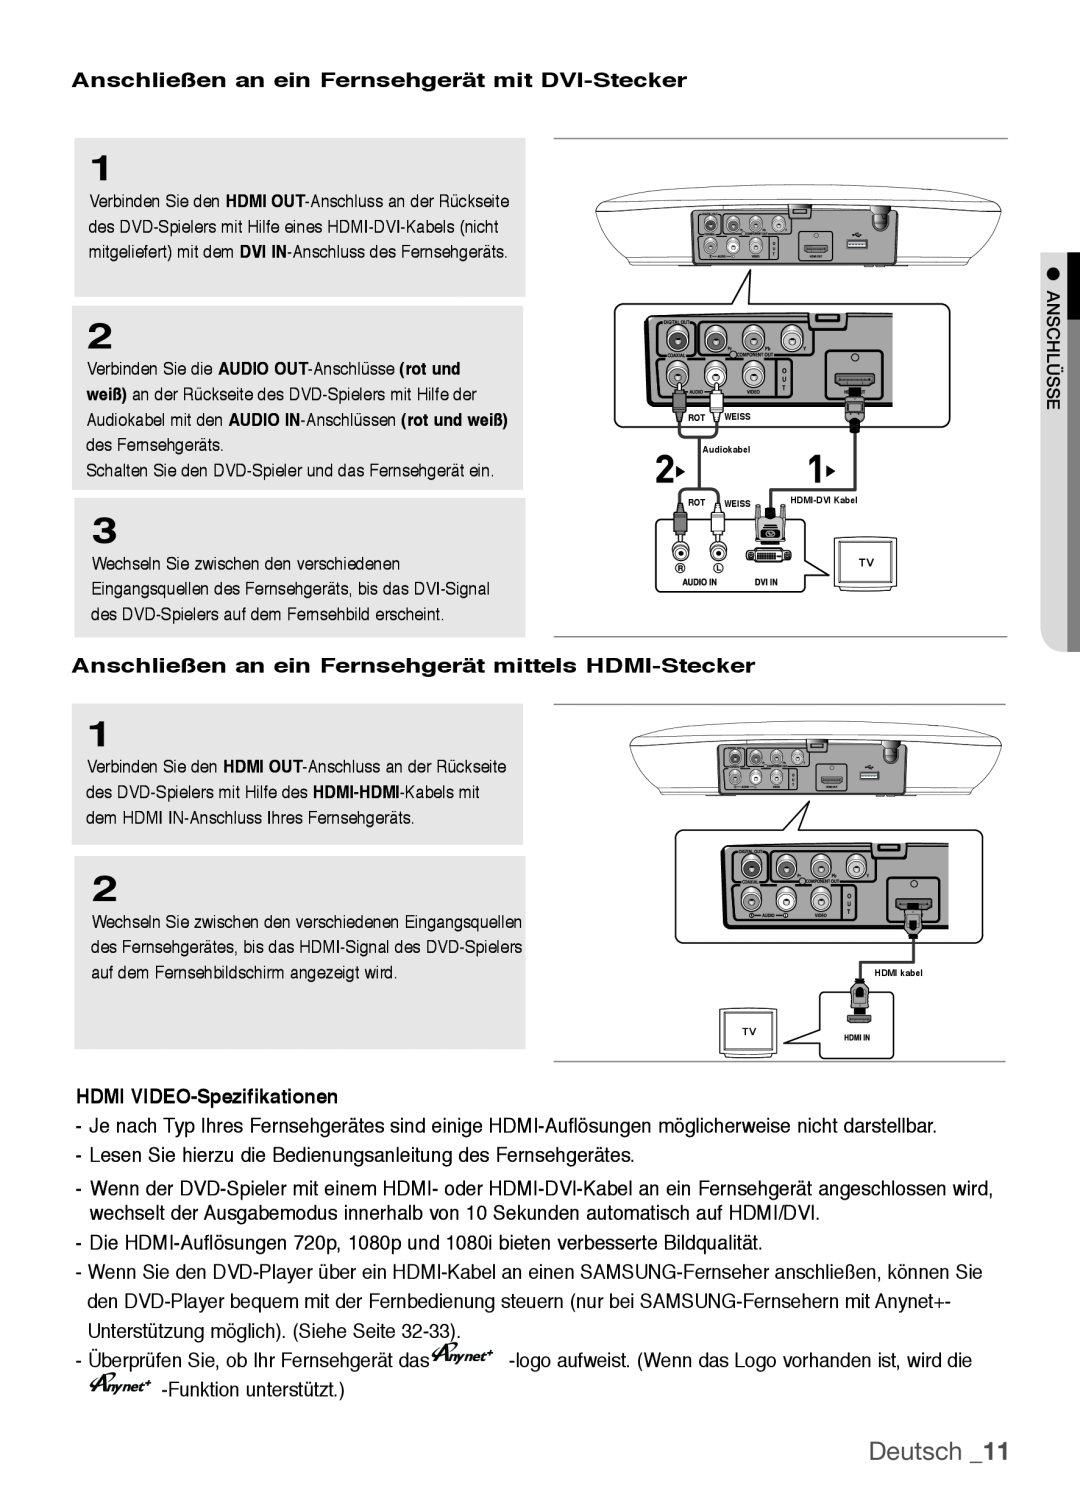 Samsung DVD-H1080W/XEE, DVD-H1080/EDC Deutsch, Anschließen an ein Fernsehgerät mit DVI-Stecker, HDMI VIDEO-Spezifikationen 